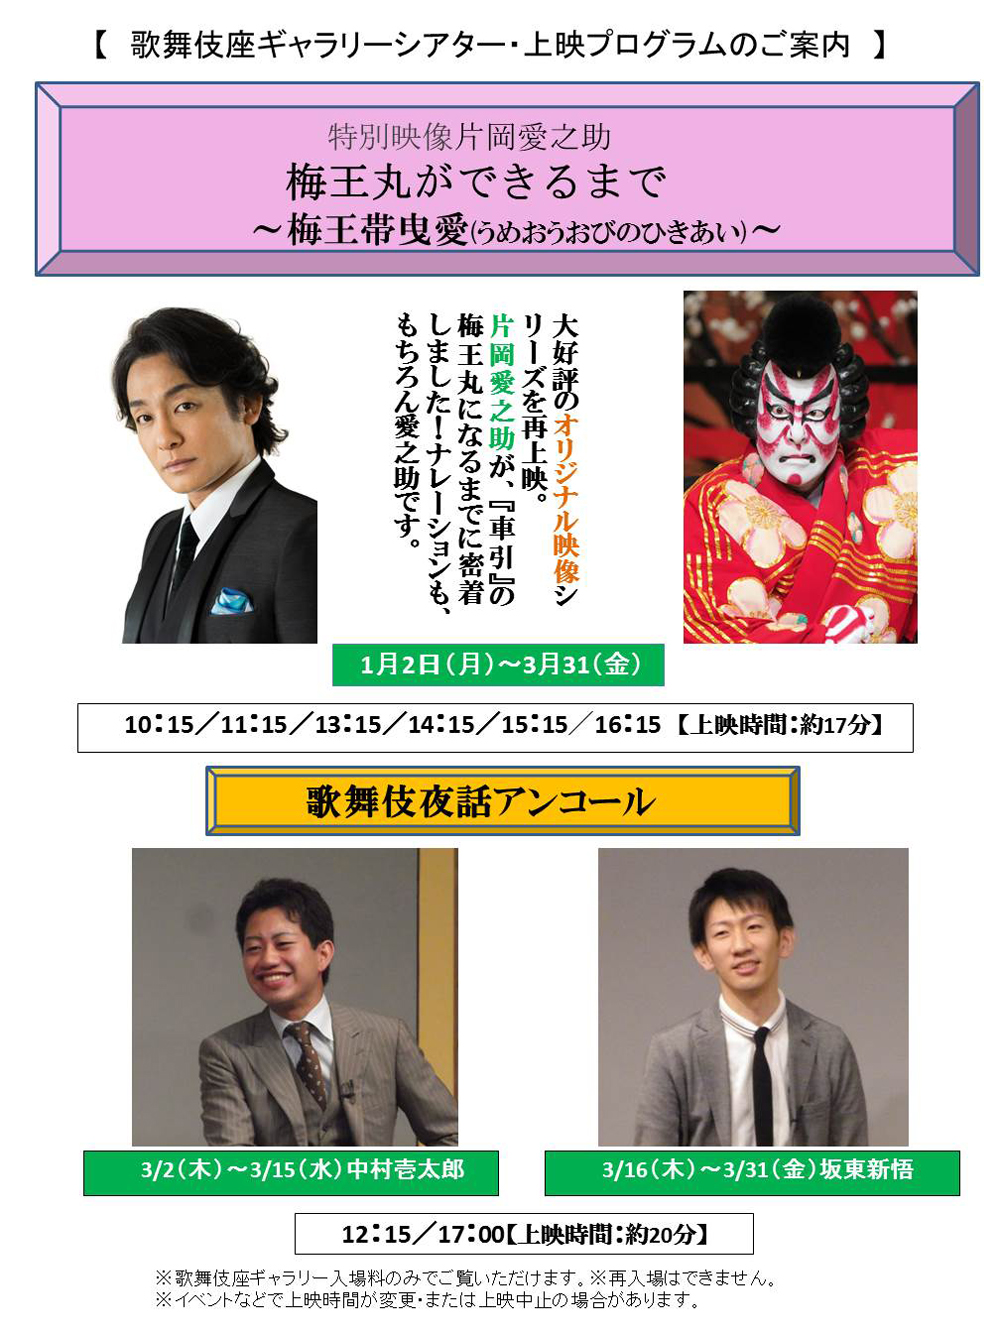 歌舞伎座ギャラリー「歌舞伎夜話アンコール」3月と「特別映像」のスケジュール決定